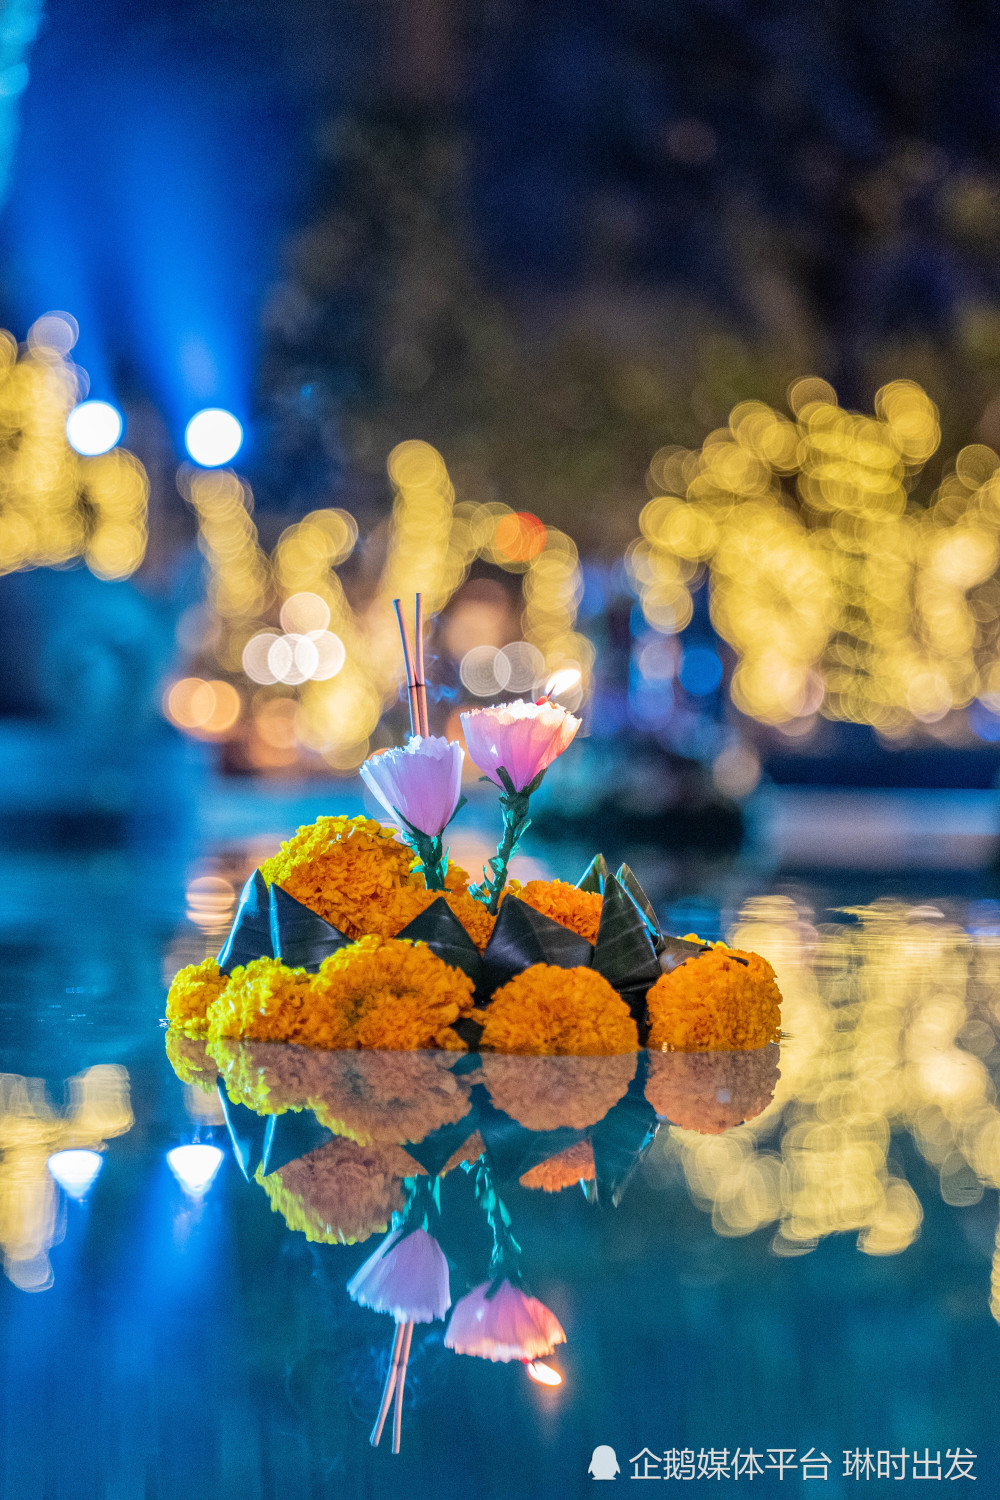 感受泰国最美的节日:水灯节